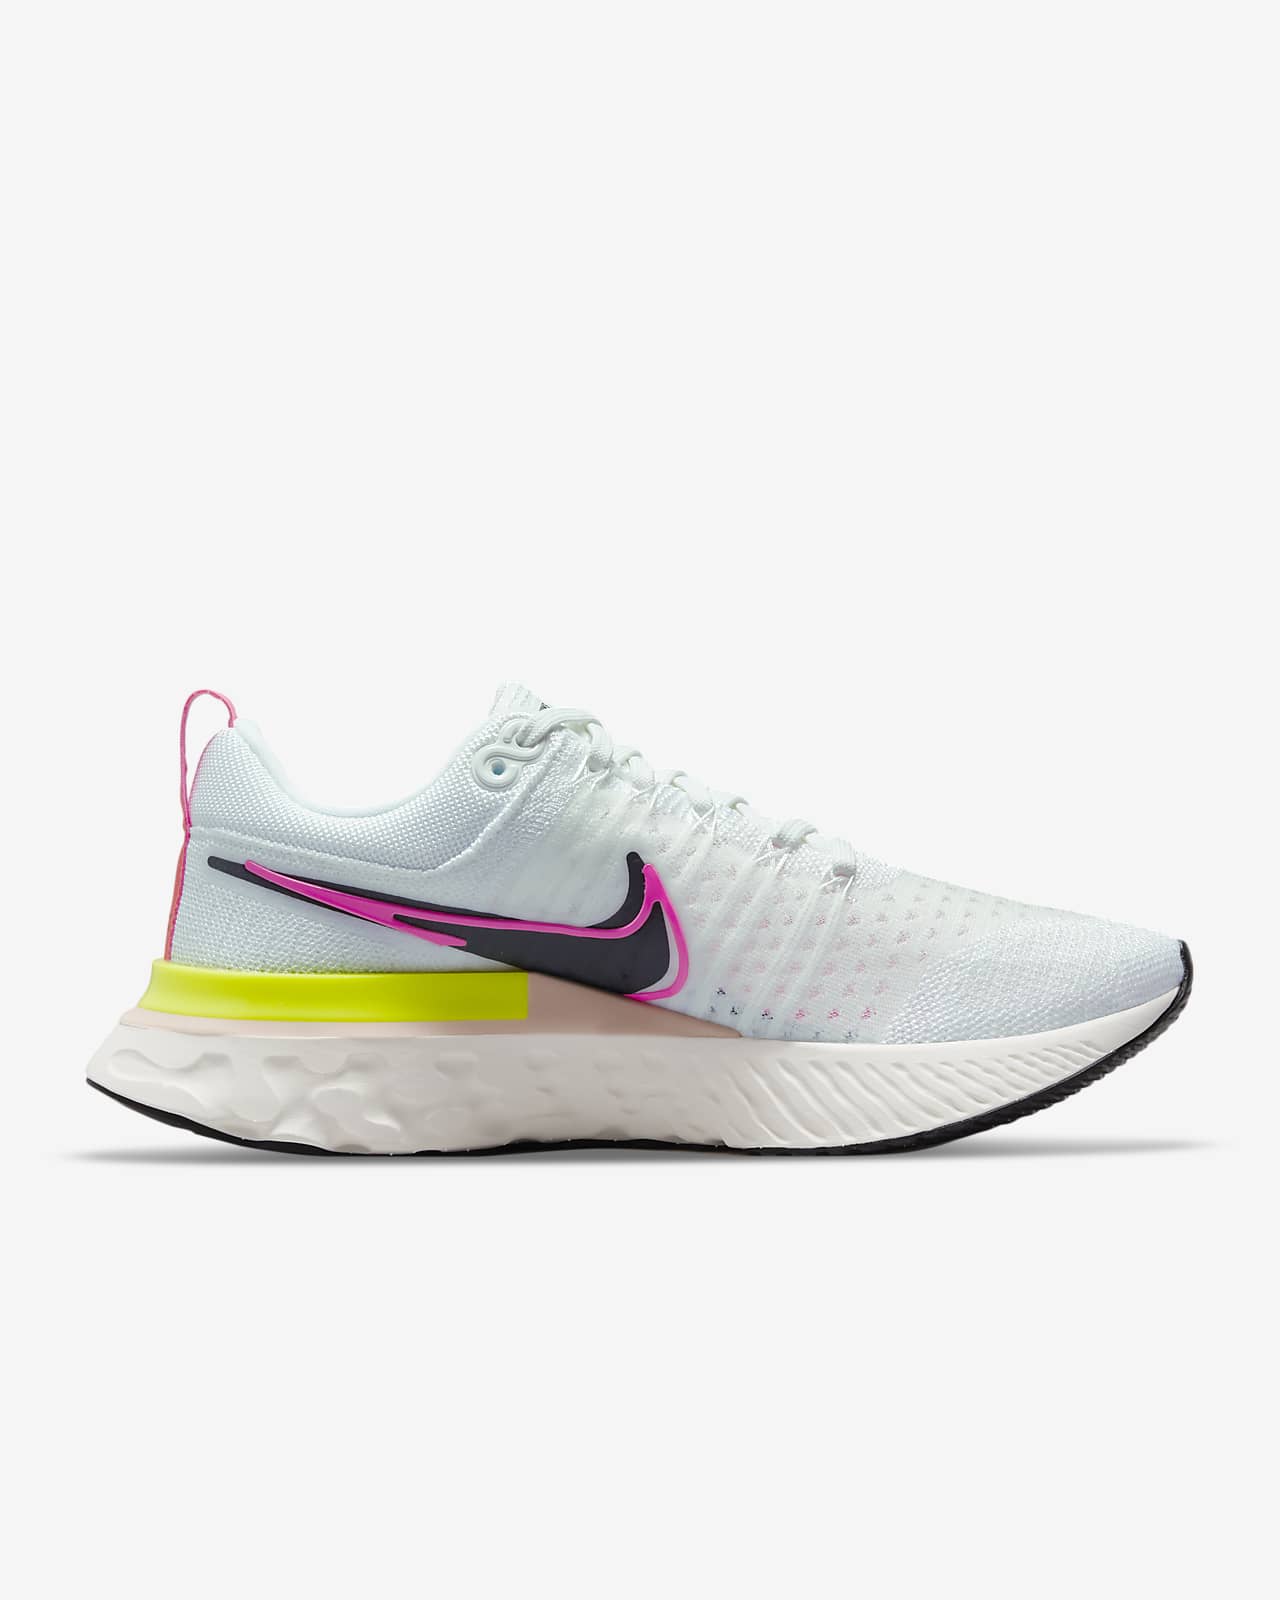 Nike React Infinity Run Flyknit 2 Women's Running Shoe. Nike LU